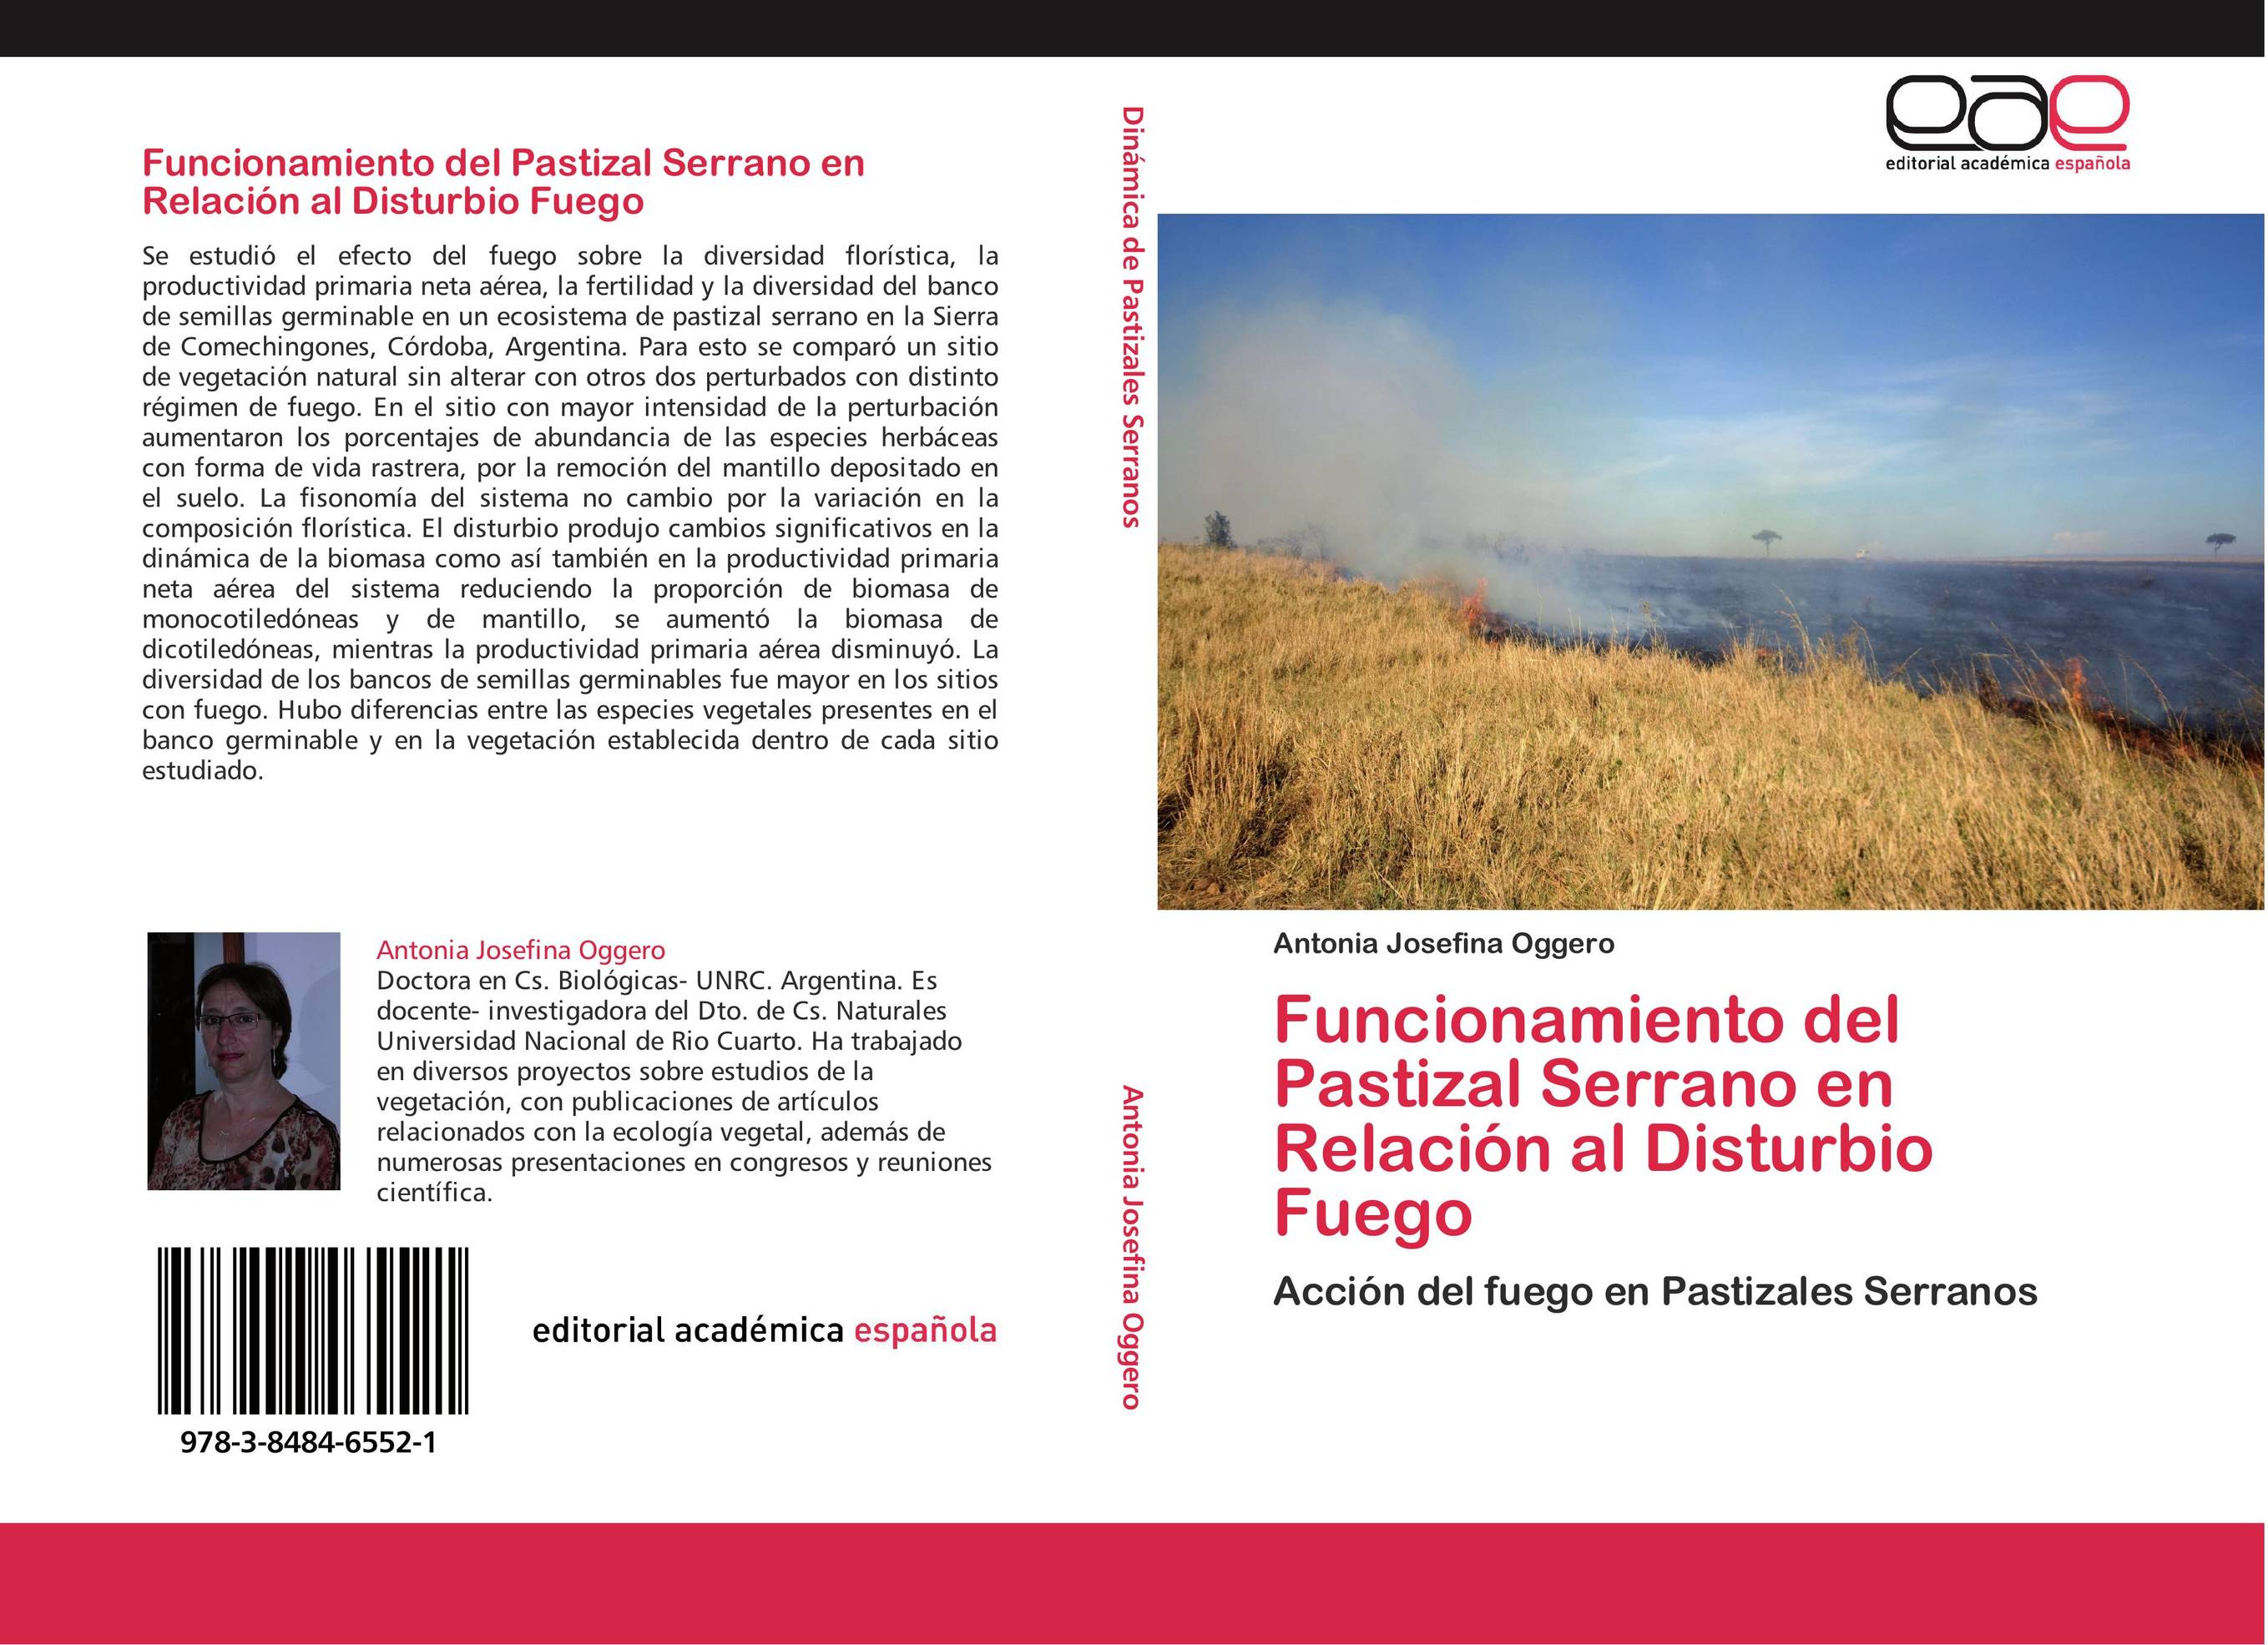 Funcionamiento del Pastizal Serrano en Relación al Disturbio Fuego